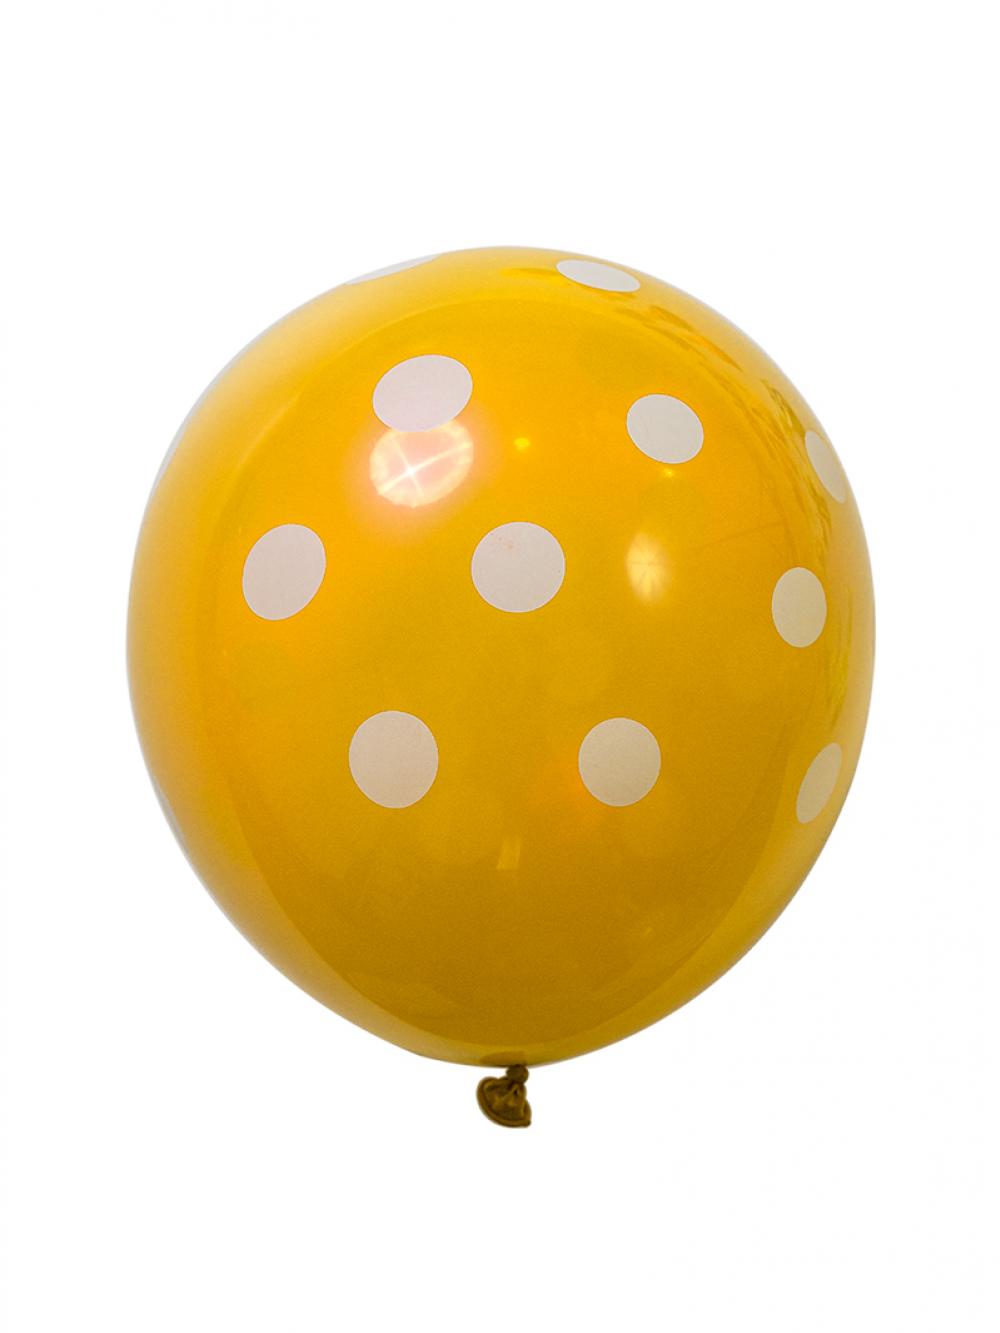 12 Inch Standard Polka Dot Balloons Yellow balloon White Dot  (100PCS)